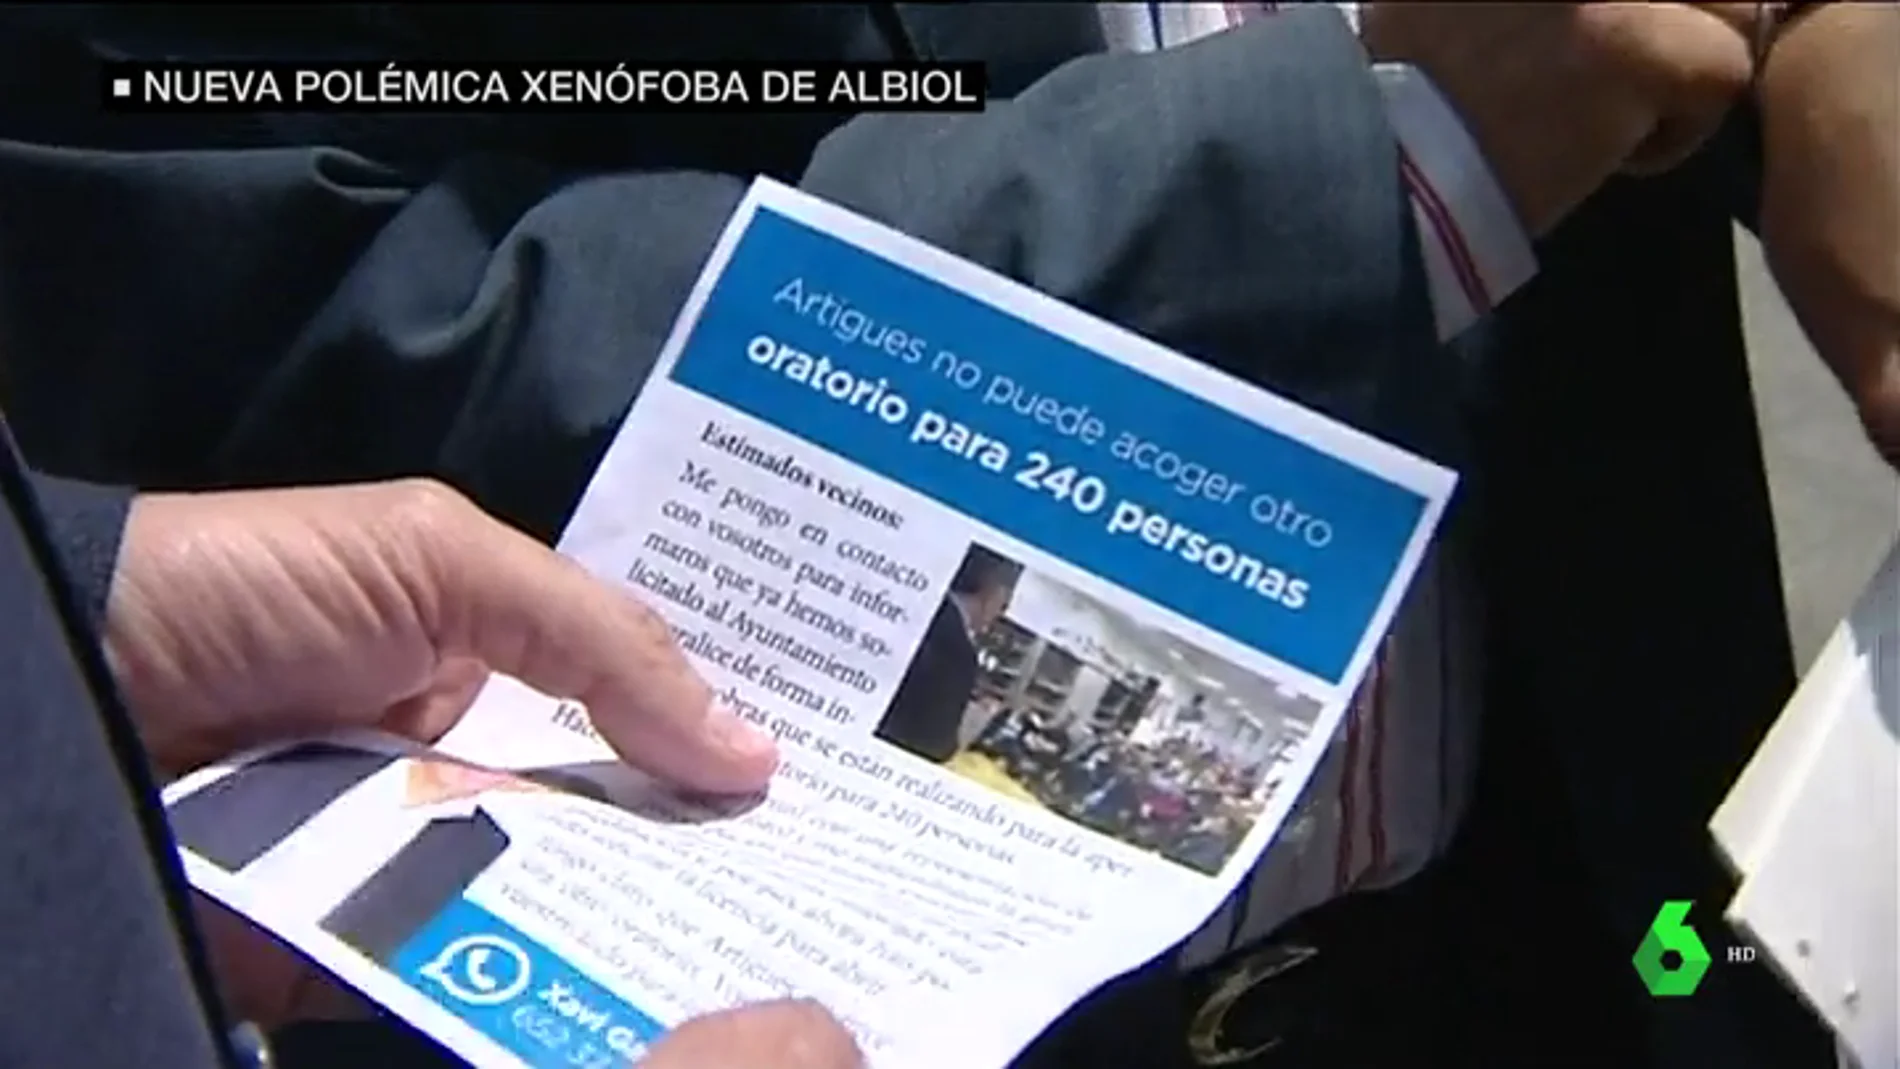 El PP reparte panfletos contra la apertura de un cuarto oratorio en un barrio de Badalona al considerarlo "excesivo"